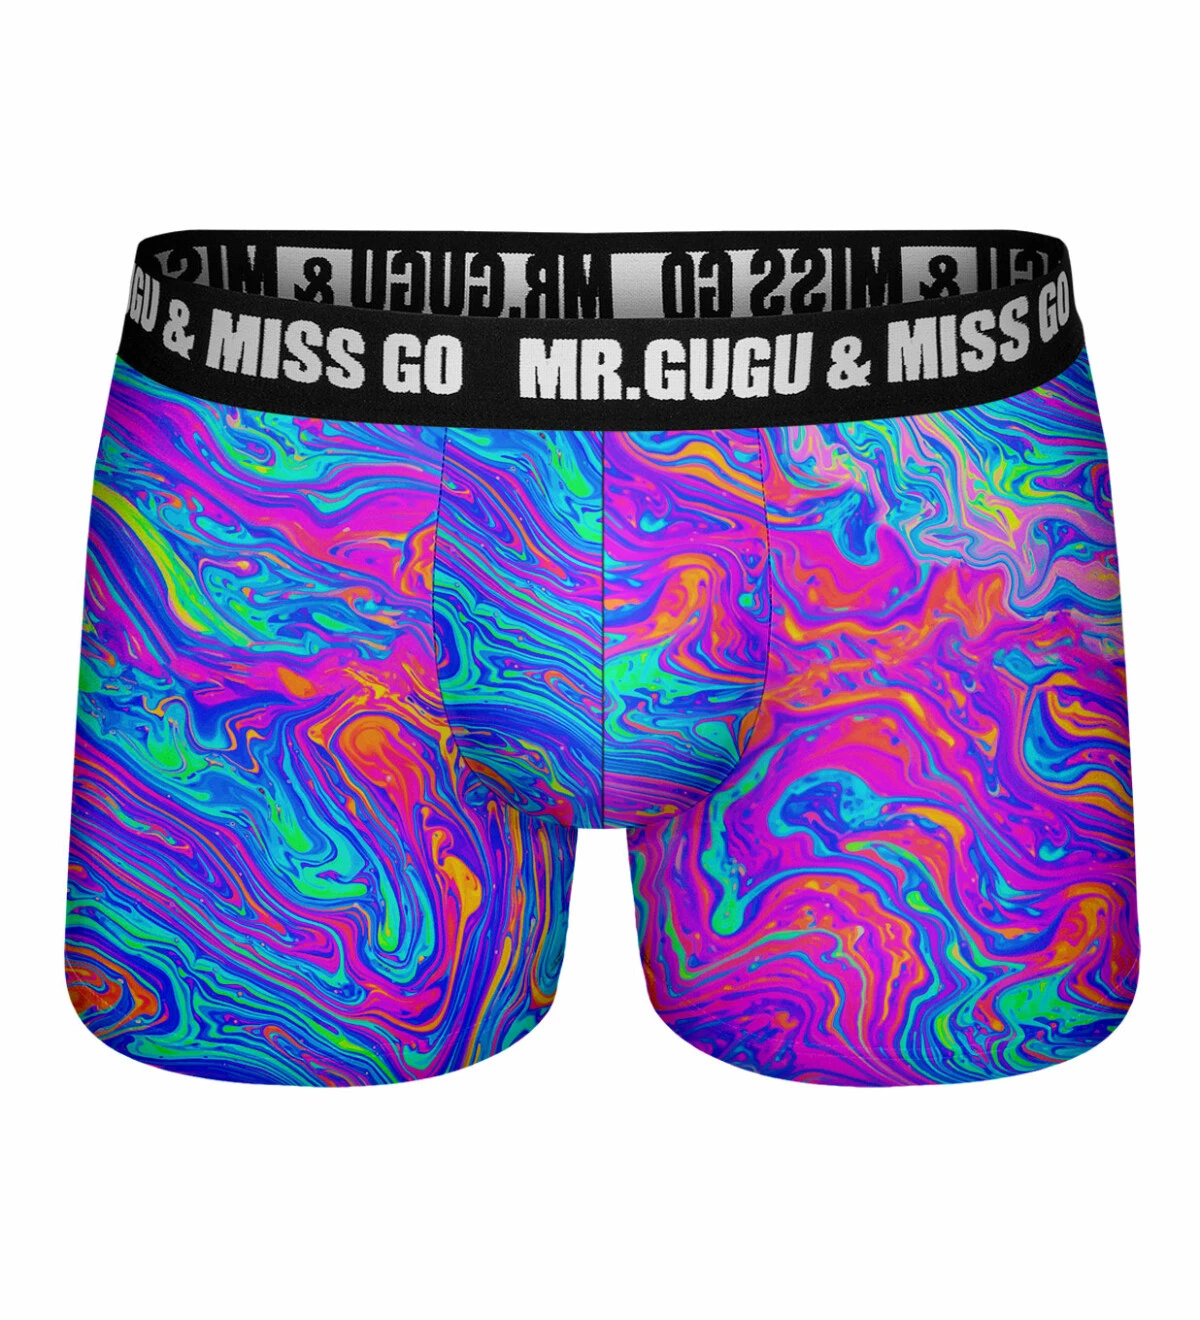 Underwear - Mr. Gugu & Miss Go